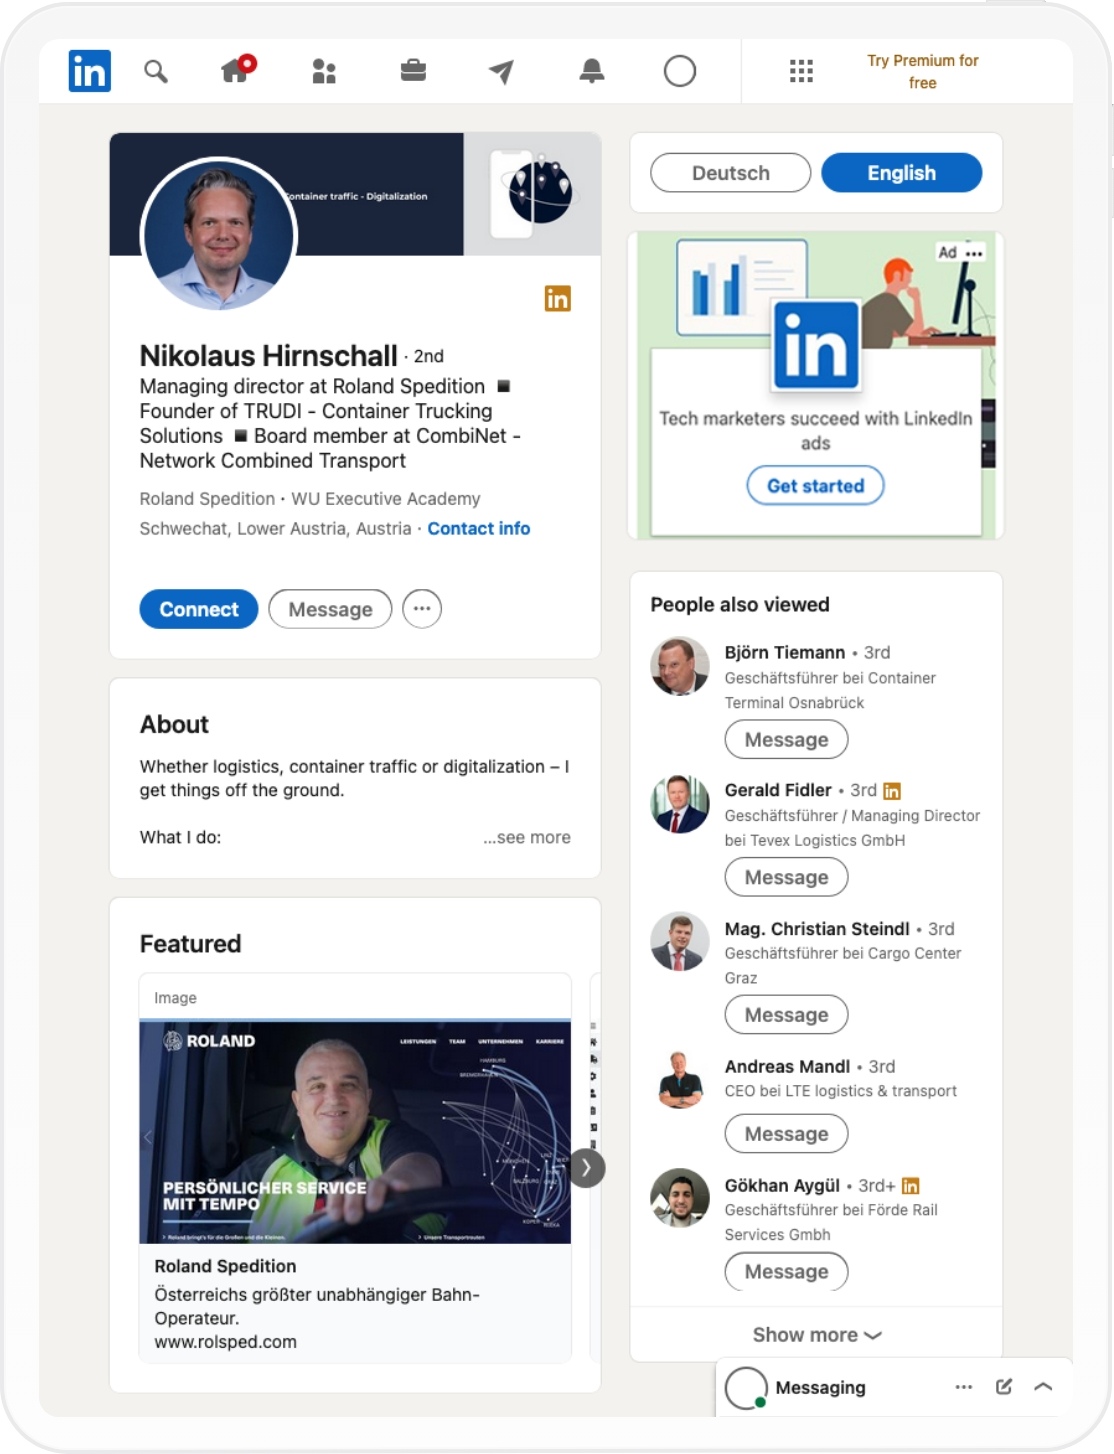 LinkedIn Profil von Nikolaus Hirnschall auf Tablet